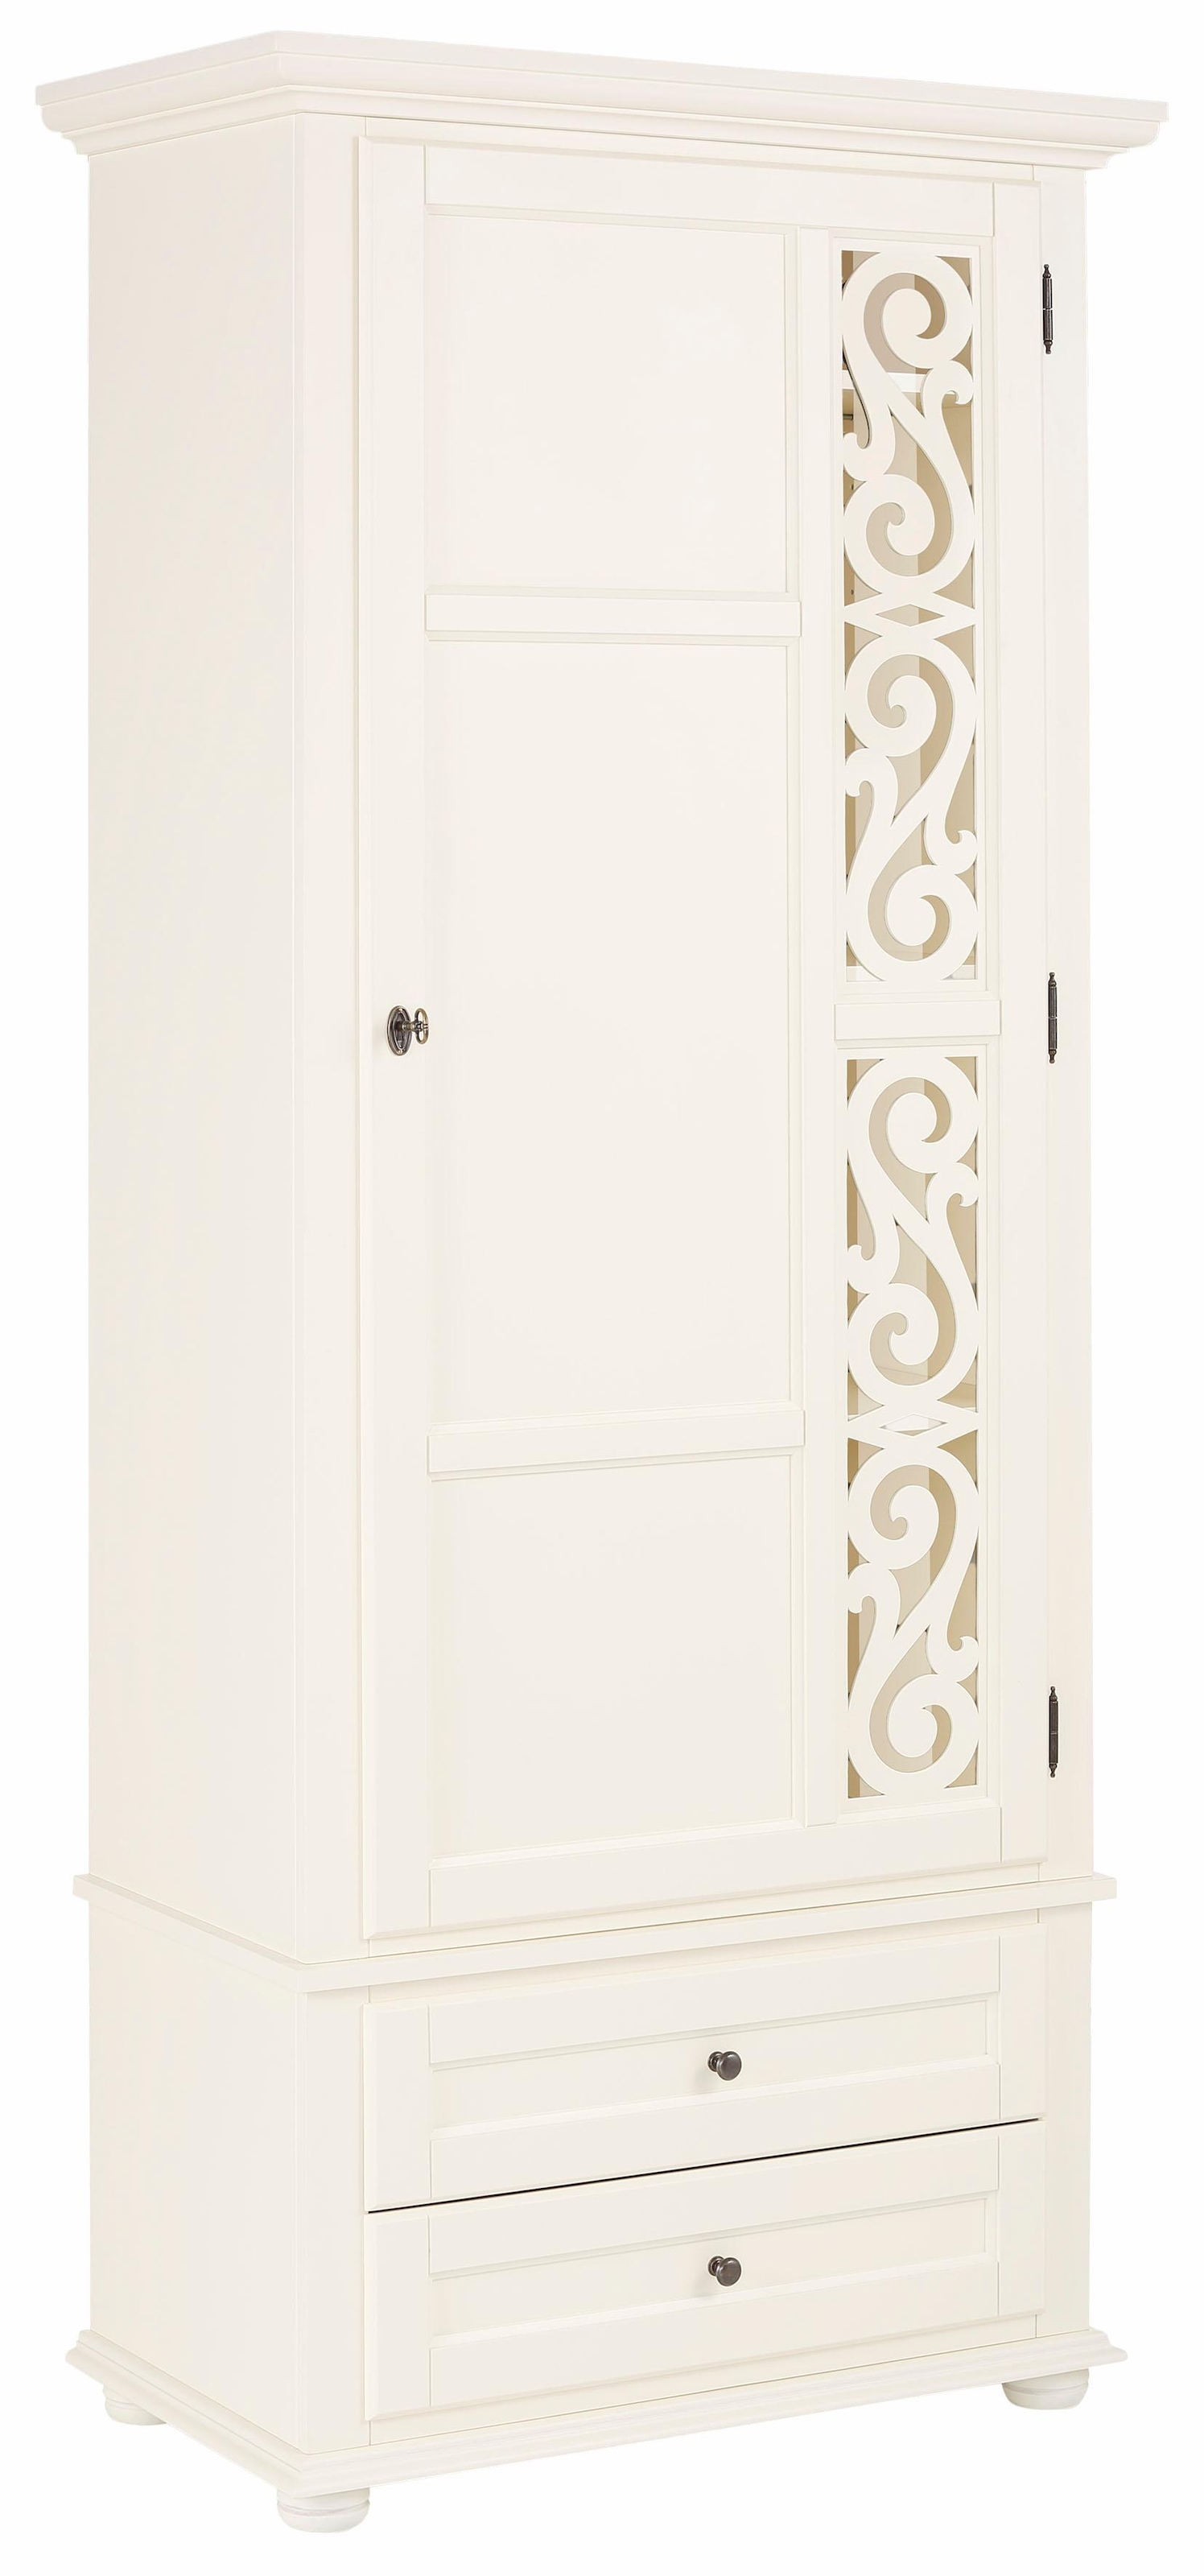 Garderobenschrank »Arabeske«, mit schönem Verzierungsmuster auf der Tür